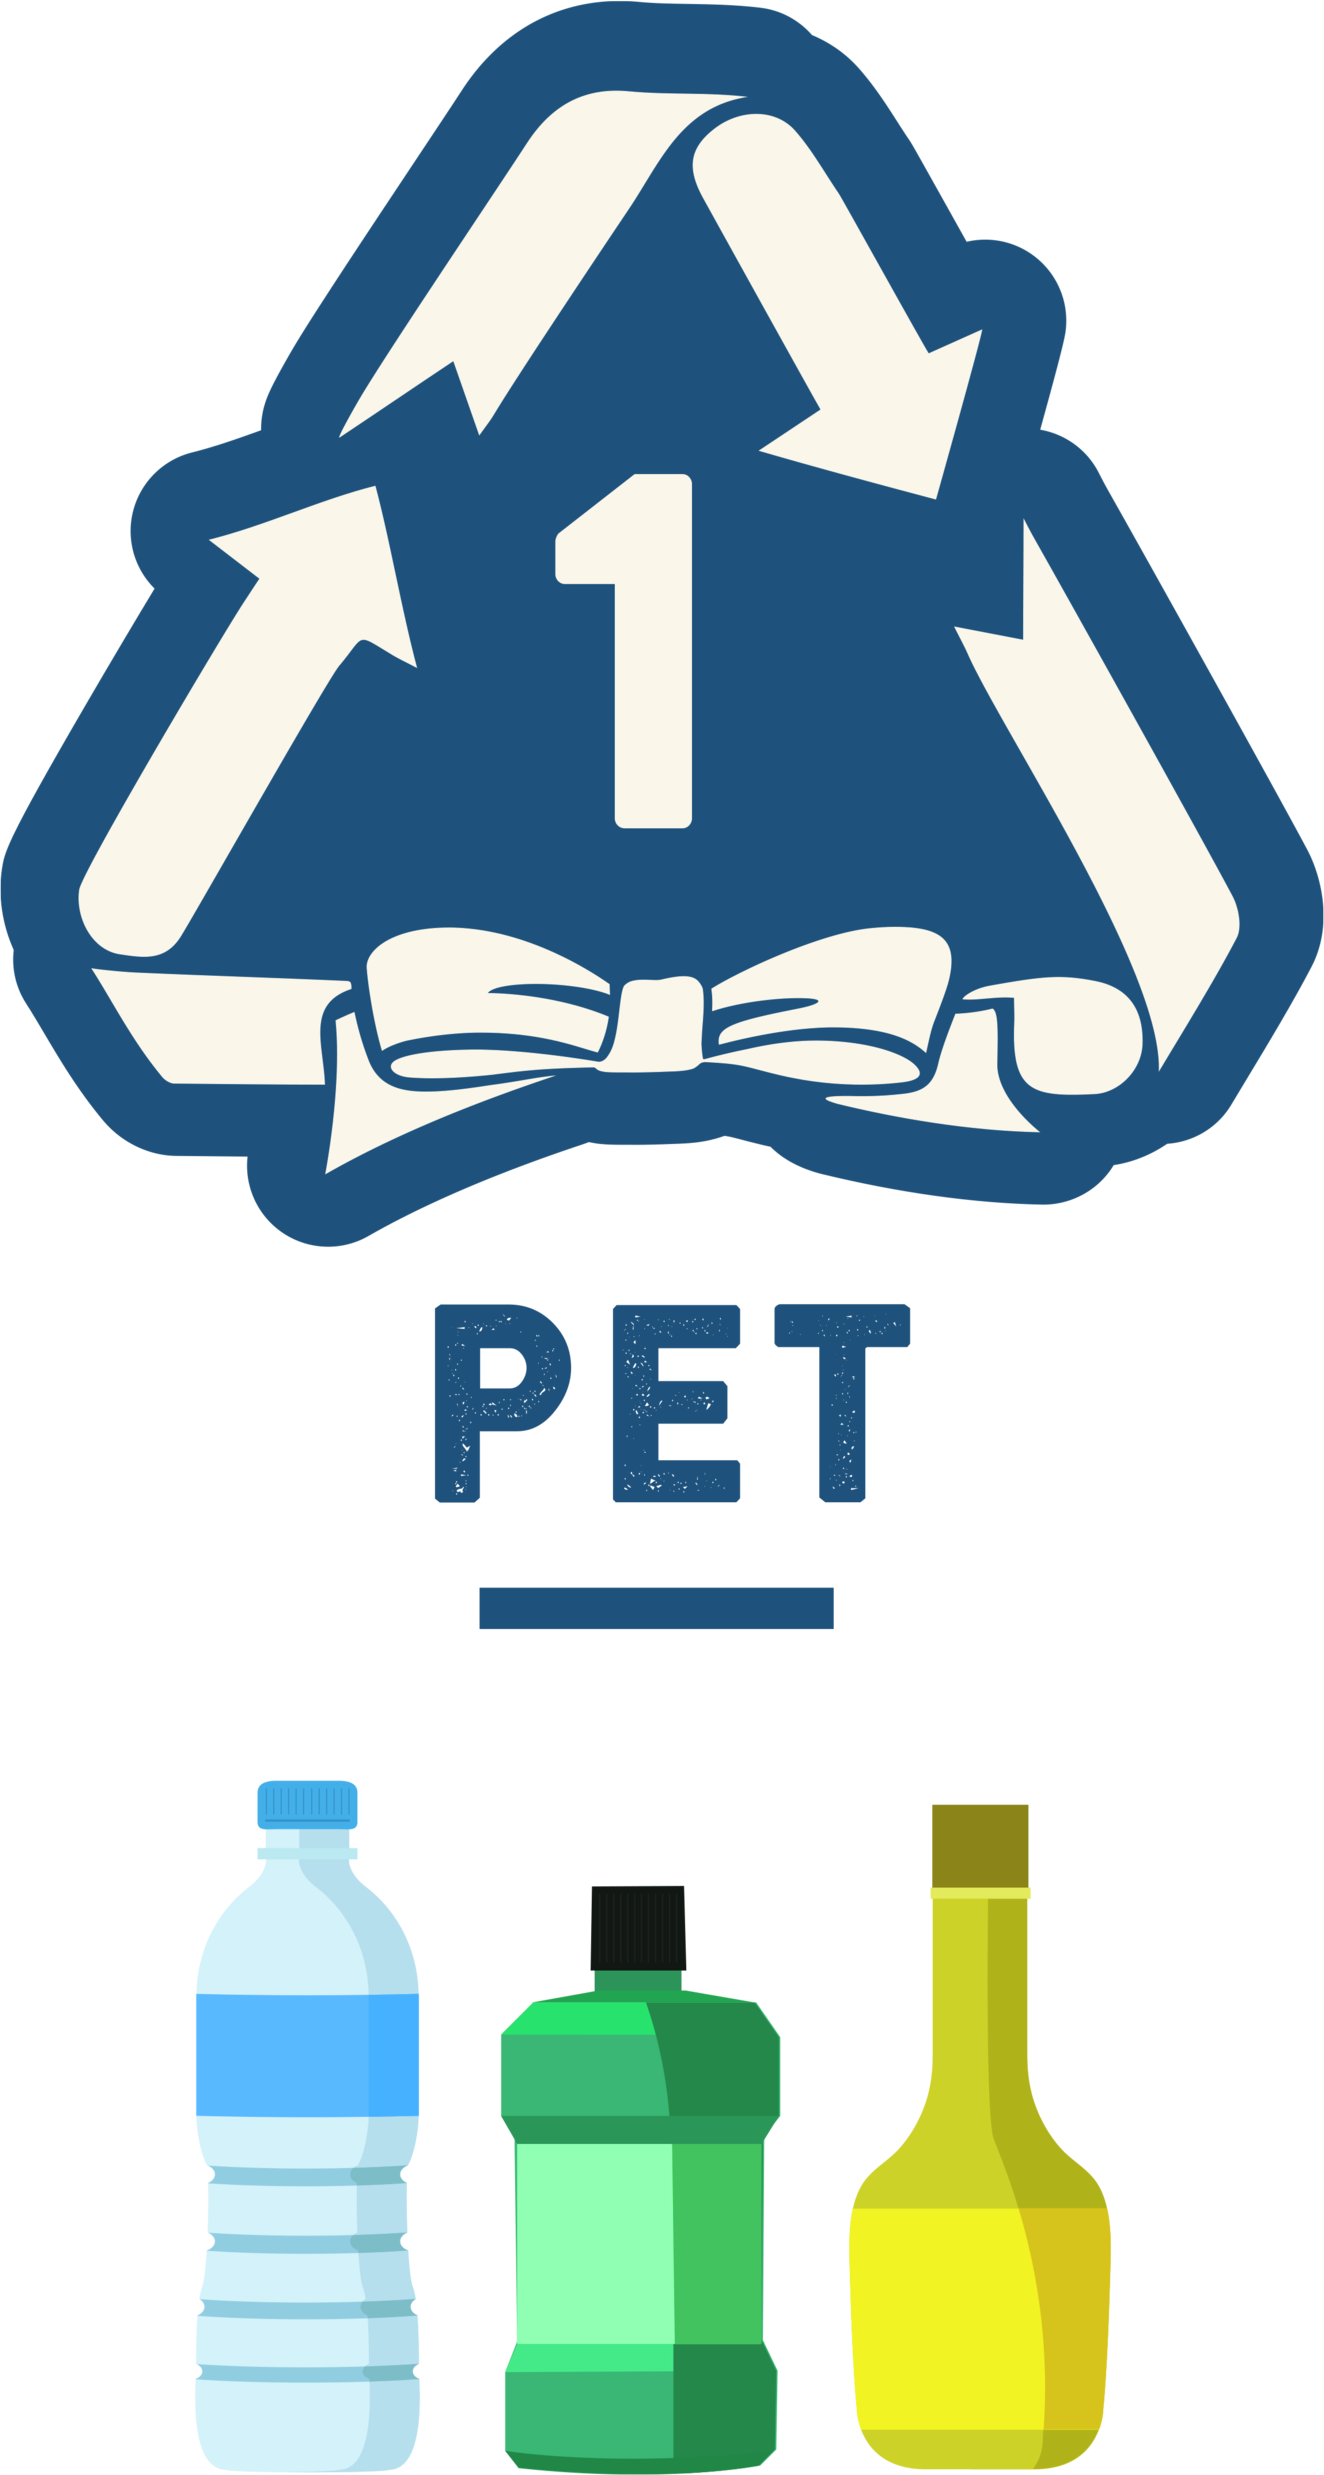 PET = Polyethylene Terephthalate